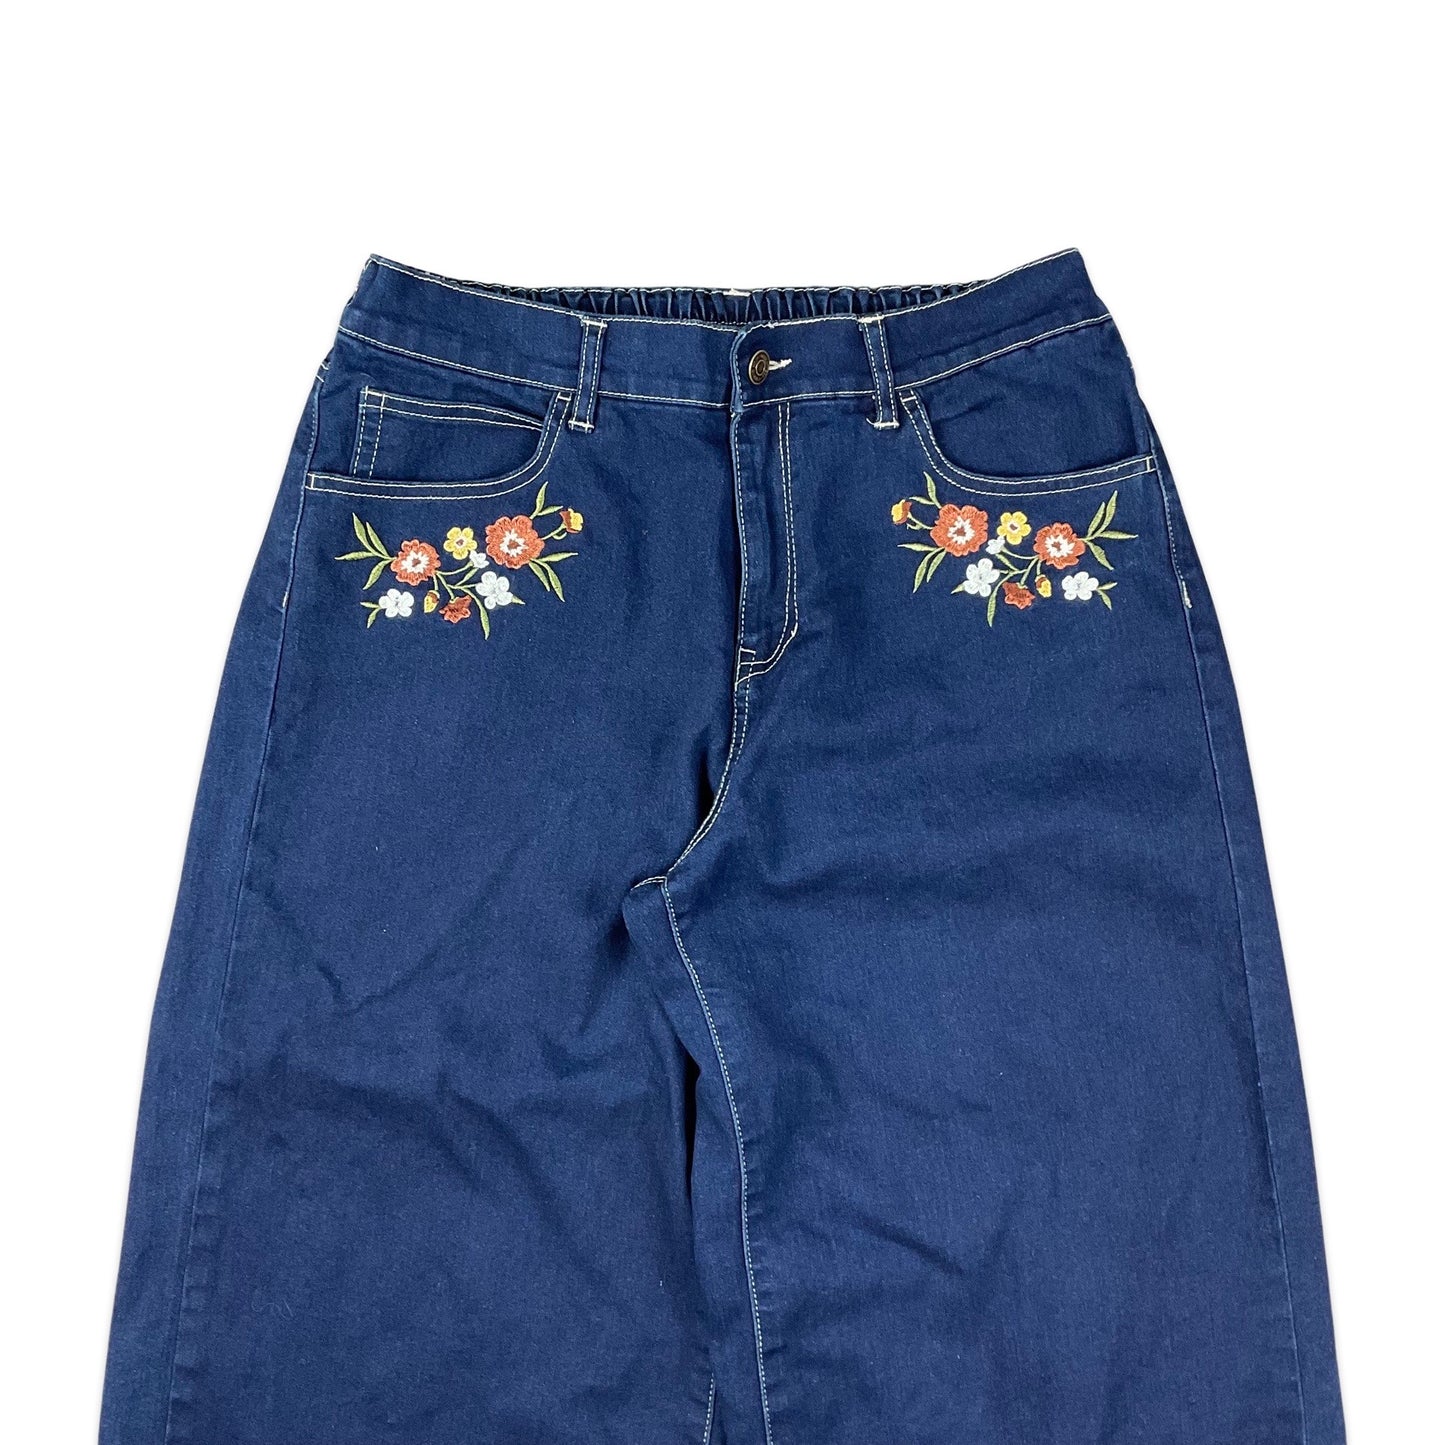 Vintage 80s Floral Embroidered Blue Wide Leg Jeans 12 14 16